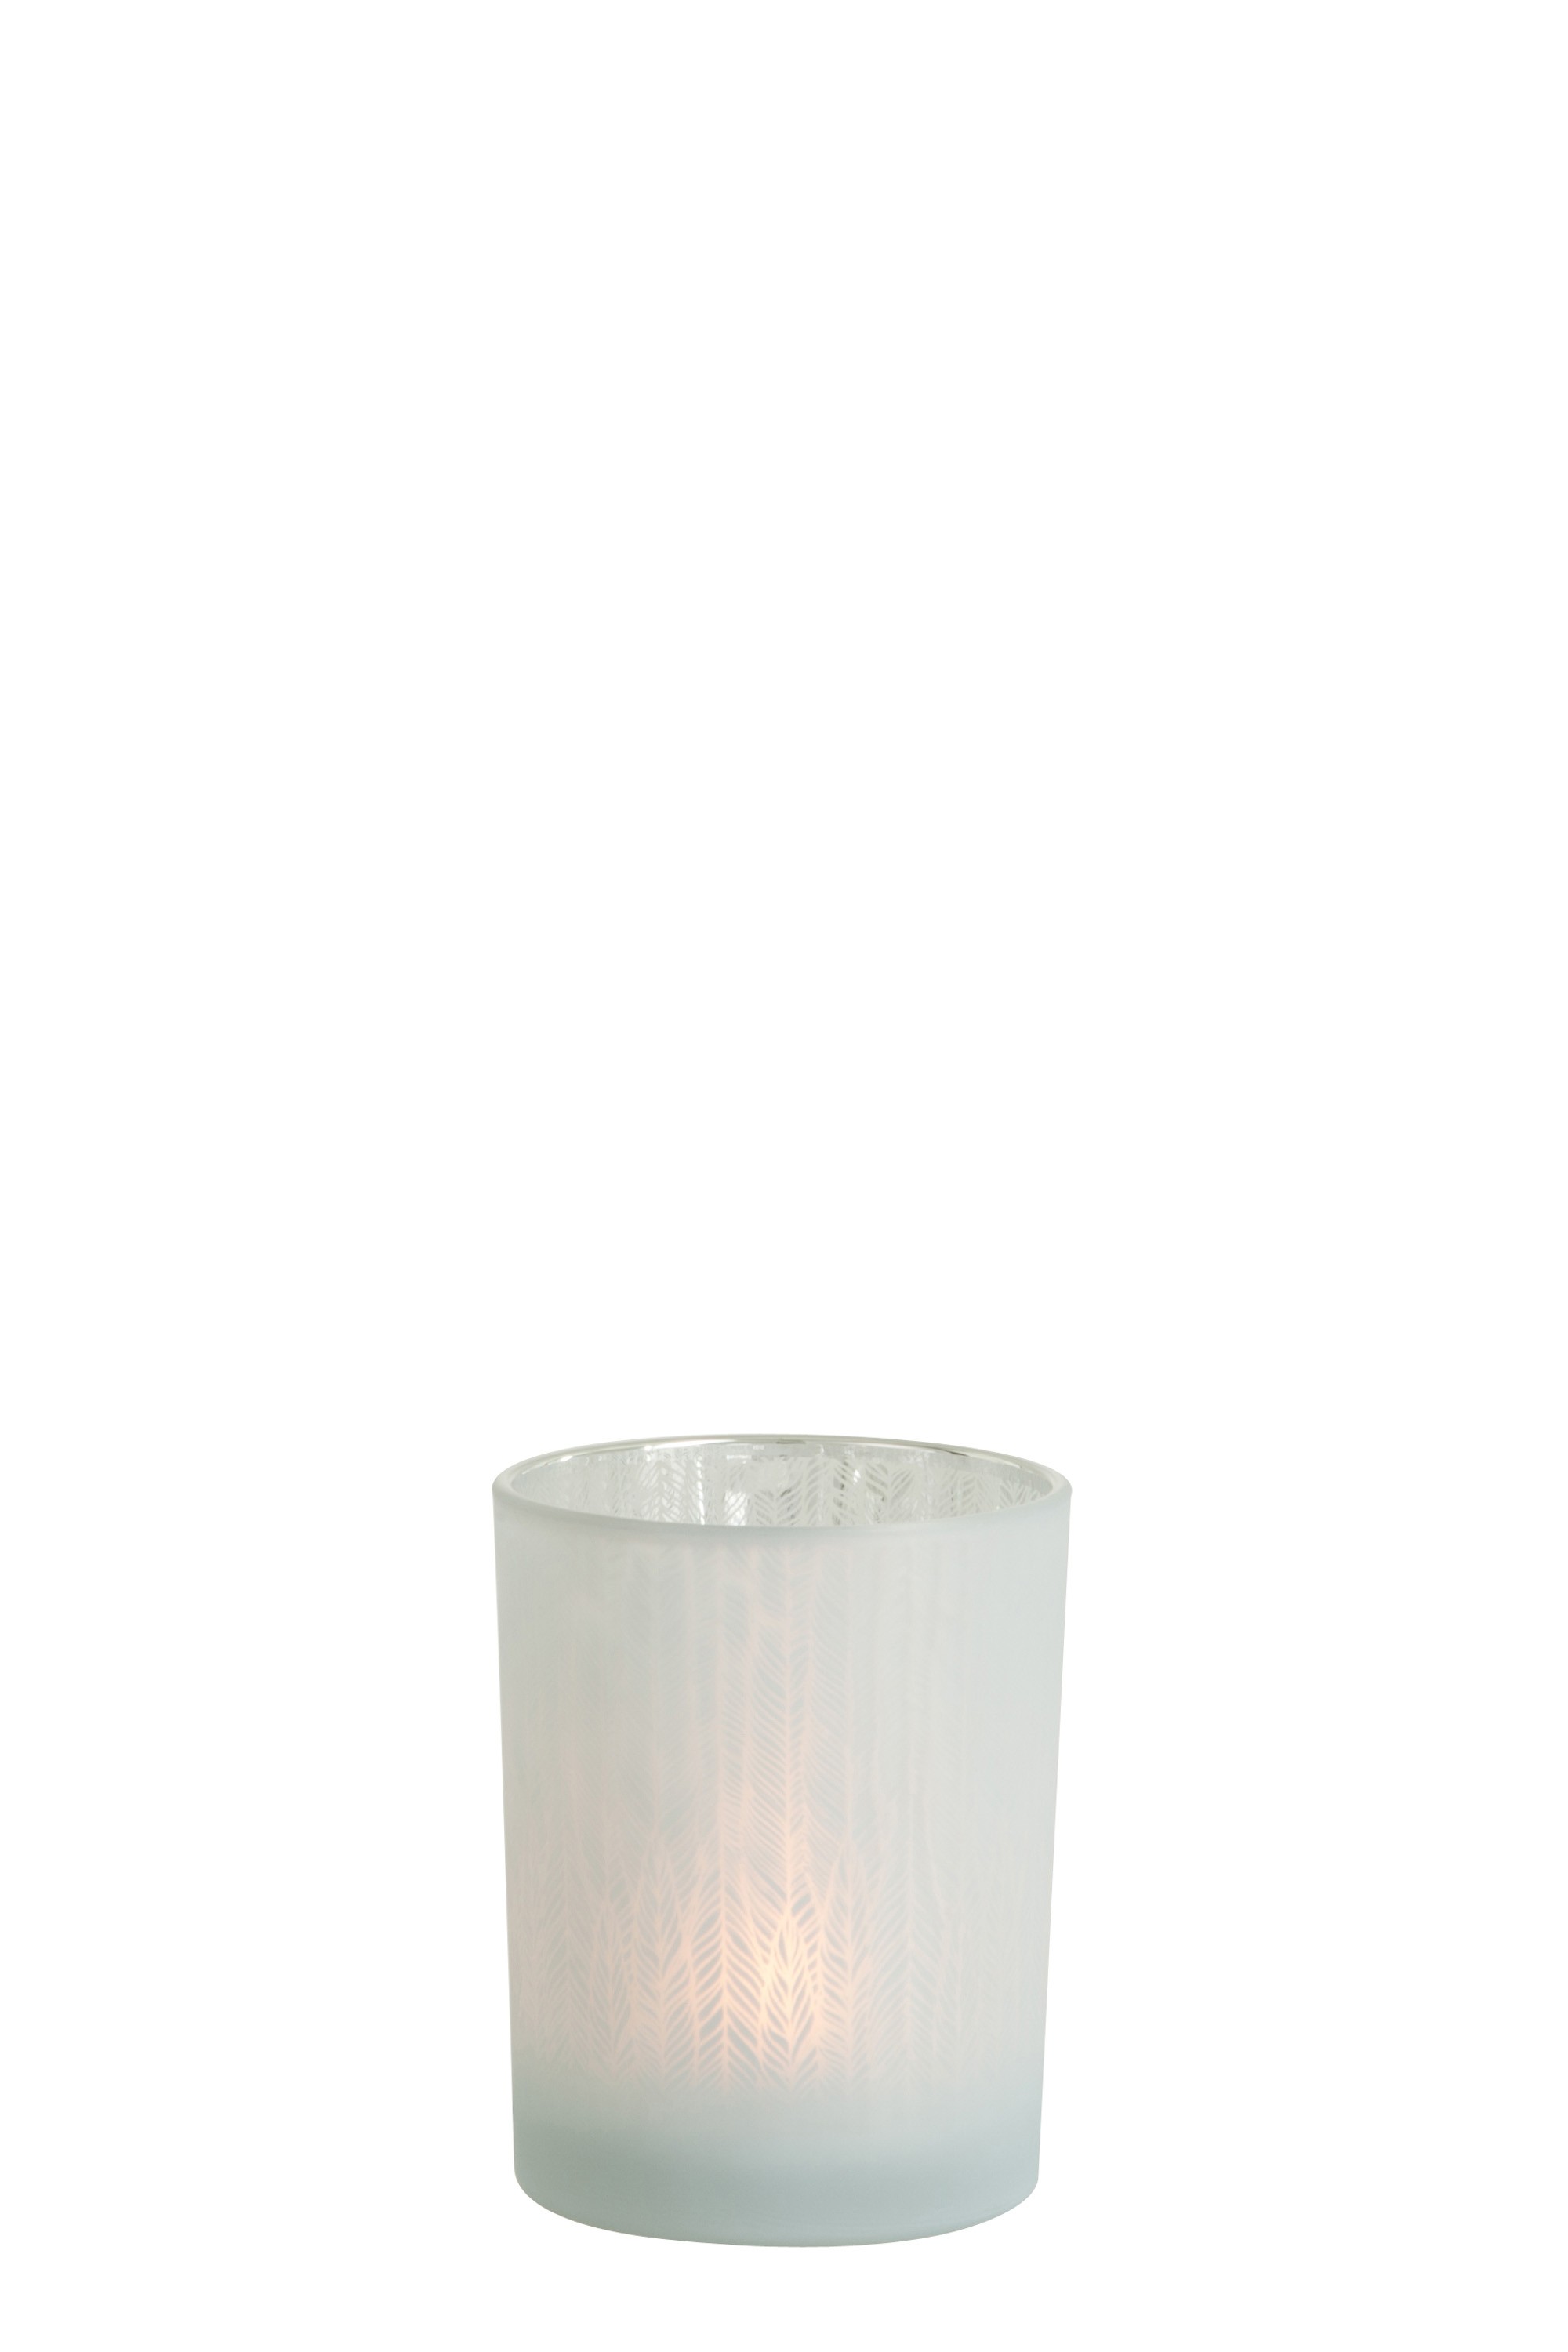 Bílý skleněný svícen na čajovou svíčku s motivem jehličí M - Ø 10*12,5 cm J-Line by Jolipa